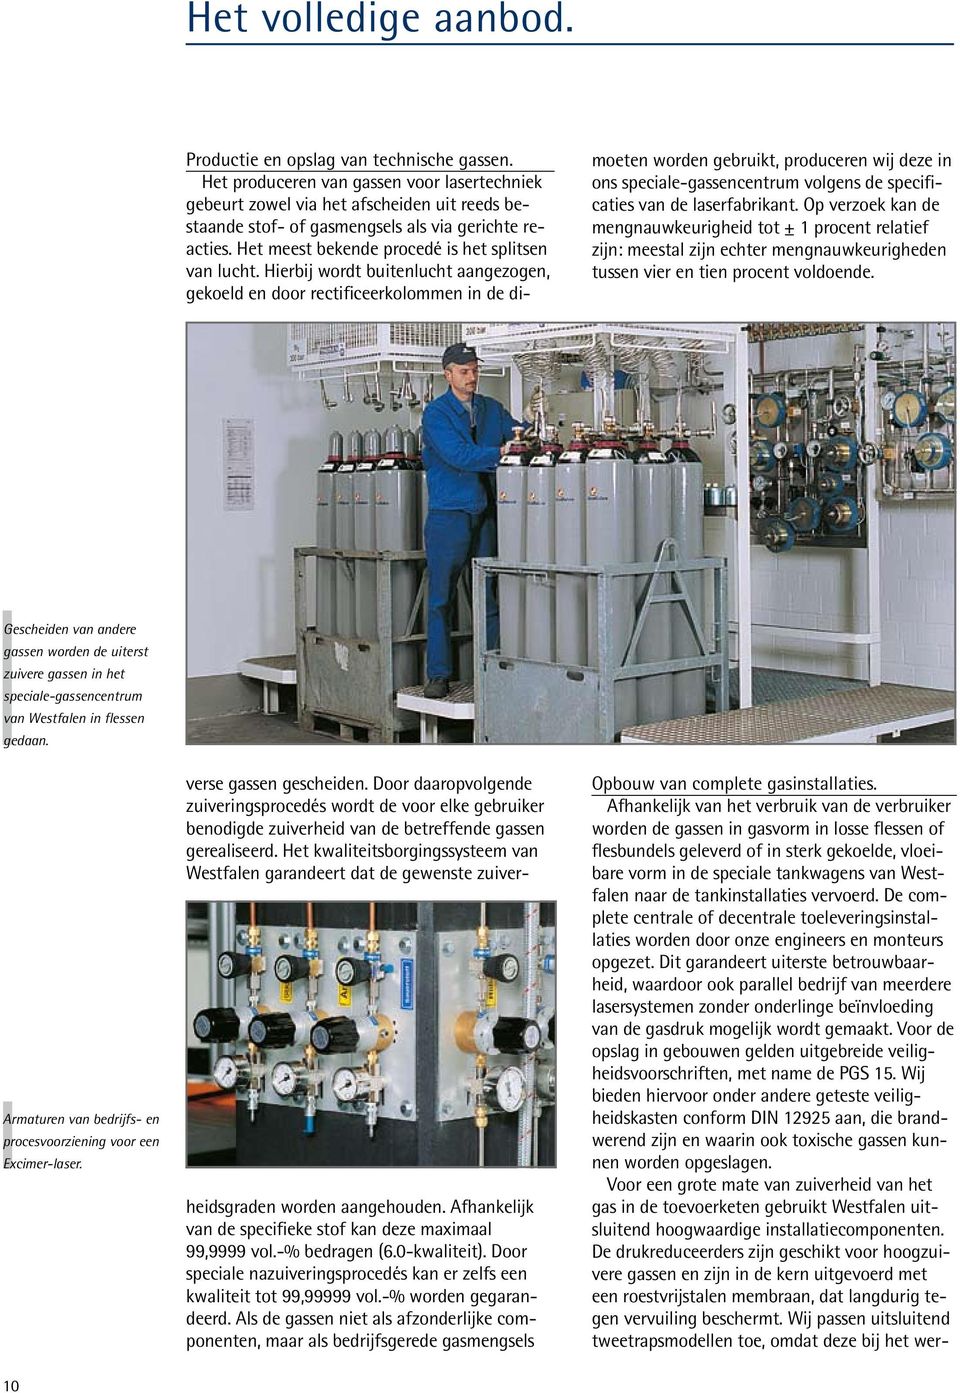 Gescheiden van andere gassen worden de uiterst zuivere gassen in het speciale-gassencentrum van Westfalen in flessen gedaan. Armaturen van bedrijfs- en procesvoorziening voor een Excimer-laser.